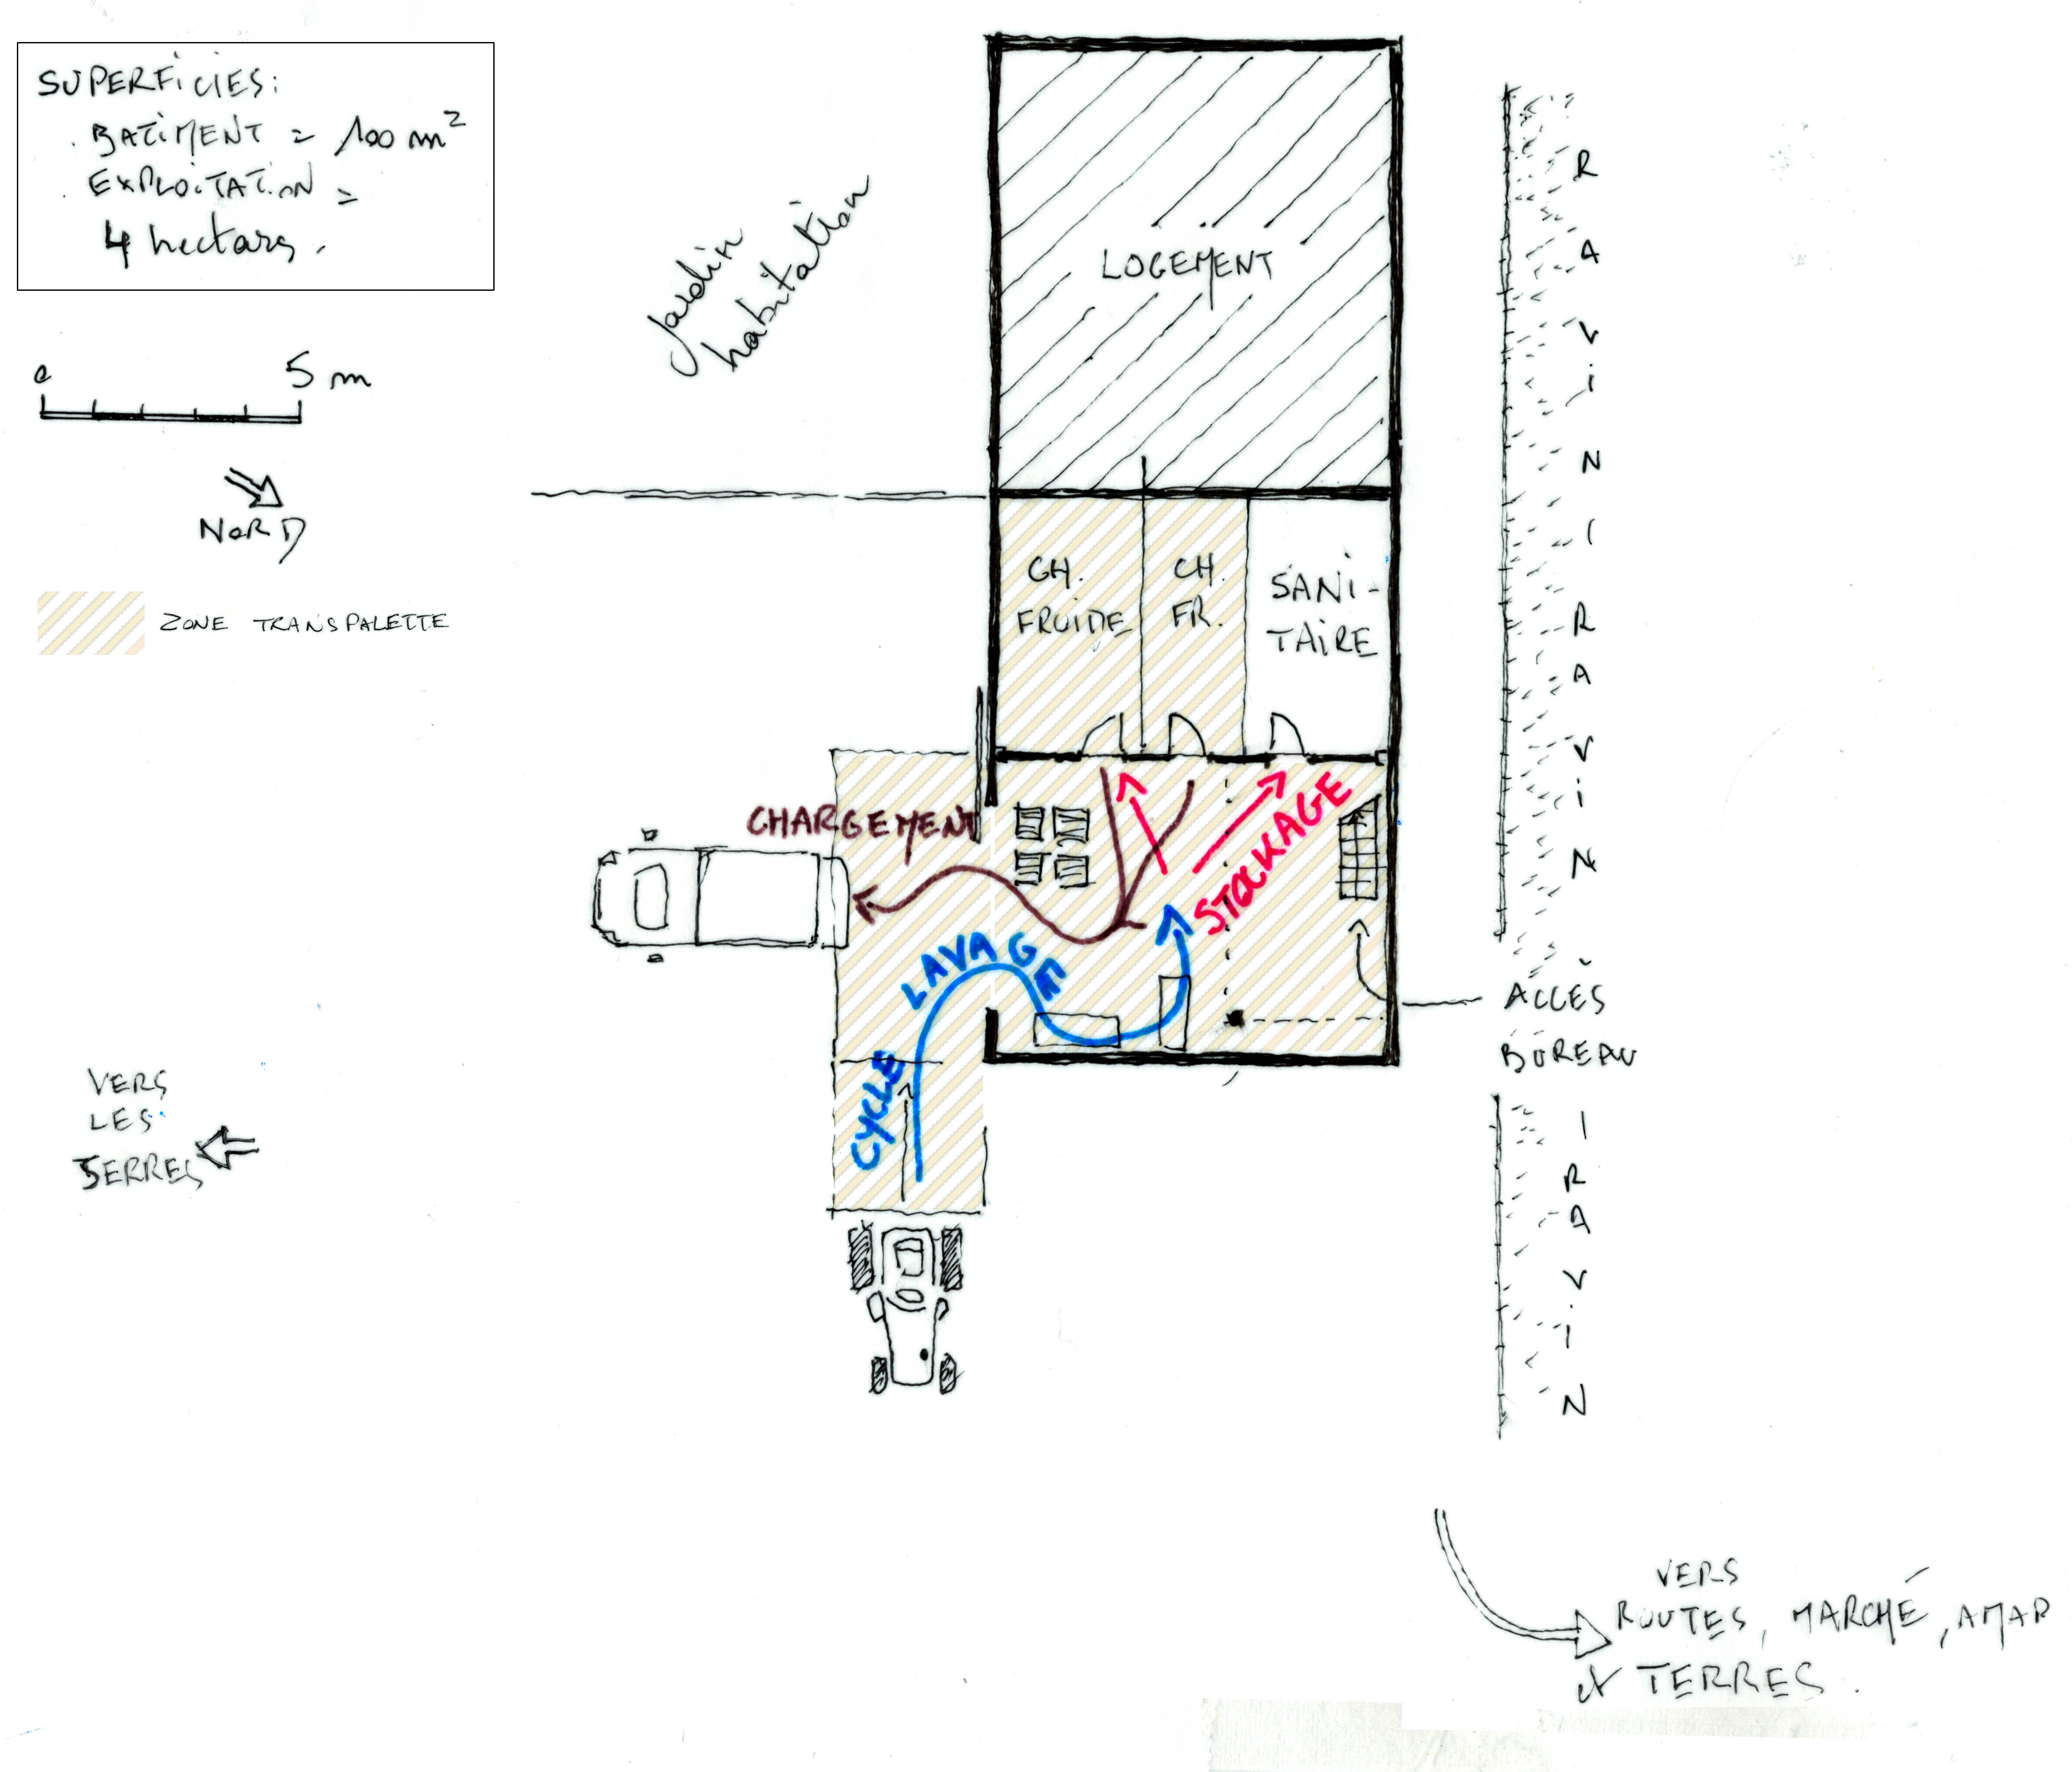 Plan : organisation des espaces et des circuits (lavage, stockage, chargement)